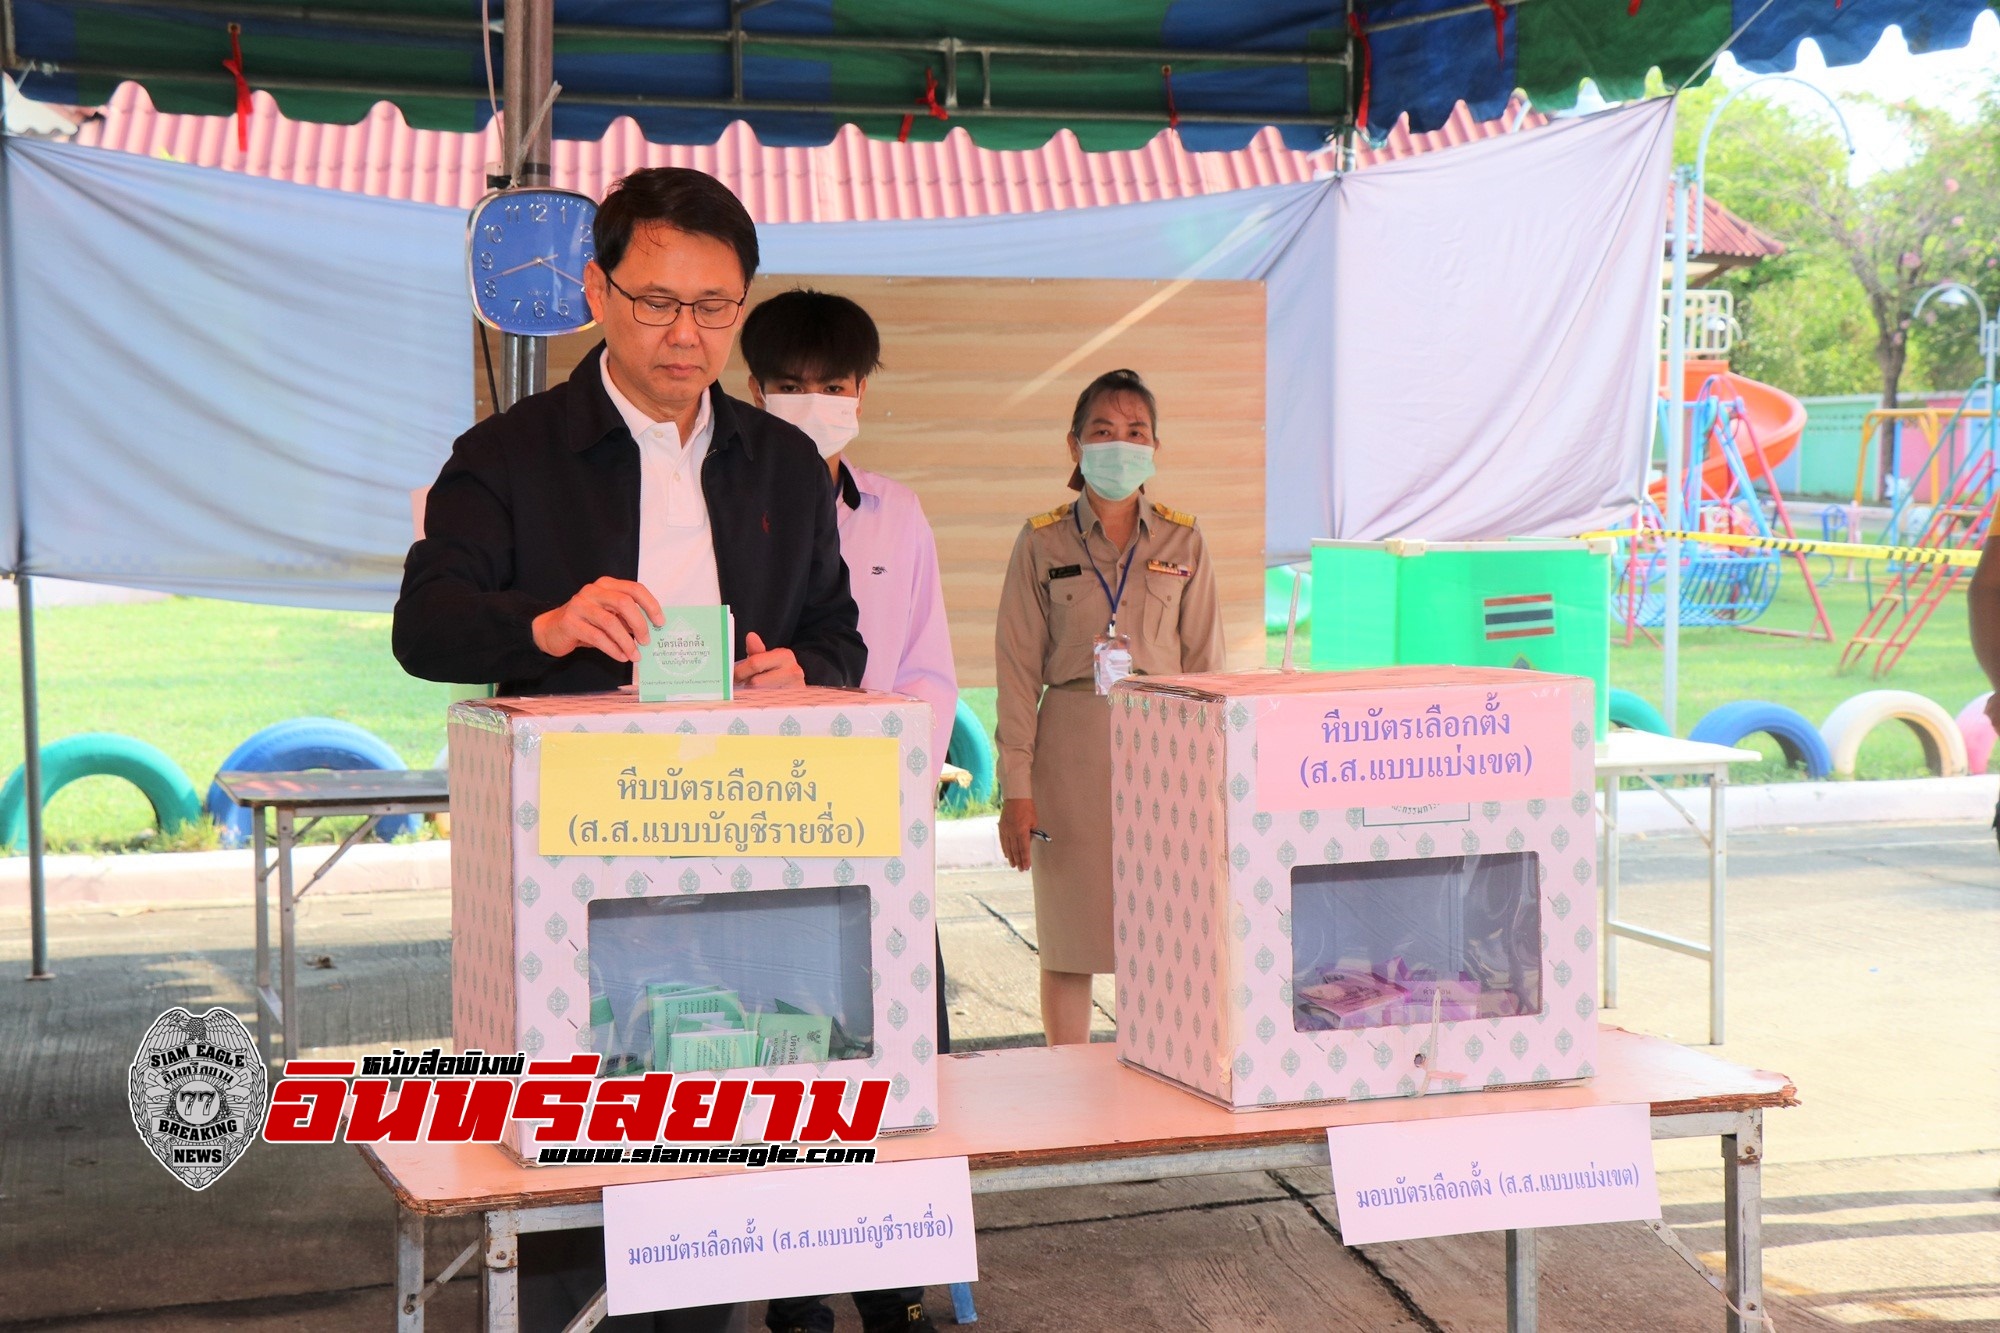 กาญจนบุรี-ผู้ว่าราชการจังหวัดกาญจนบุรี ออกมาใช้สิทธิลงคะแนนเลือกตั้งสมาชิกสภาผู้แทนราษฎร